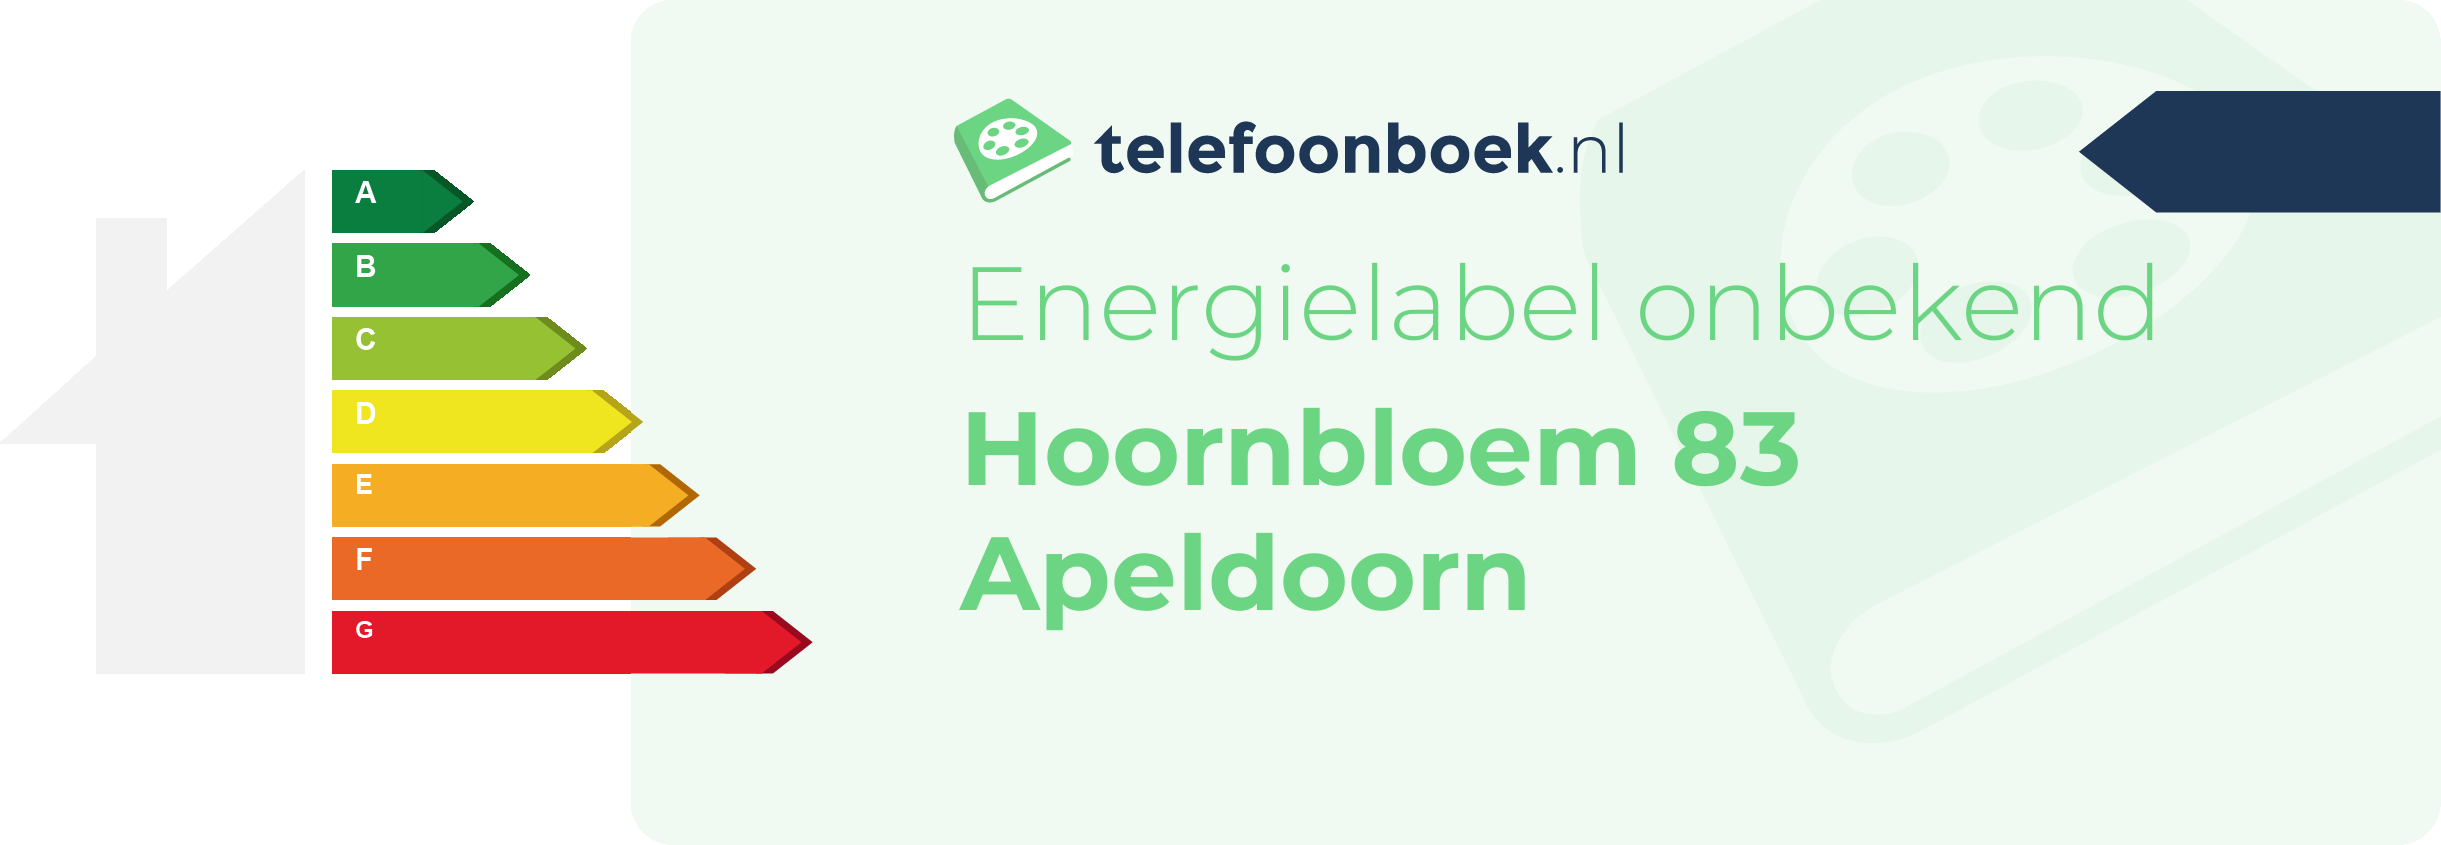 Energielabel Hoornbloem 83 Apeldoorn